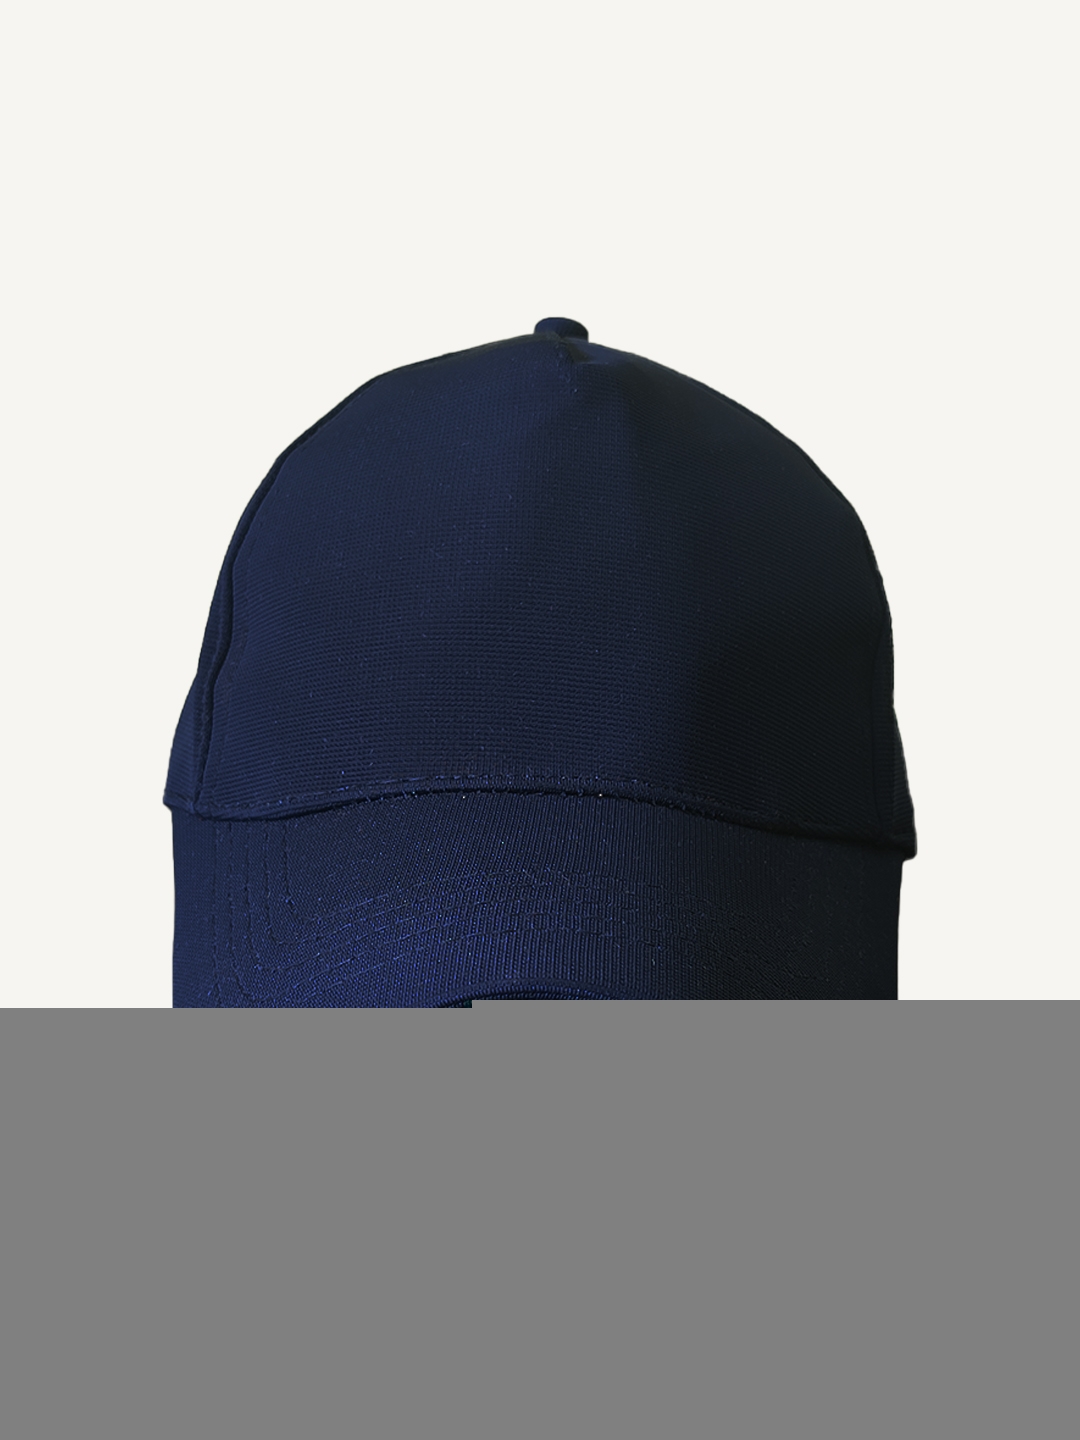 creativeideas.store | Plain Blue Cap